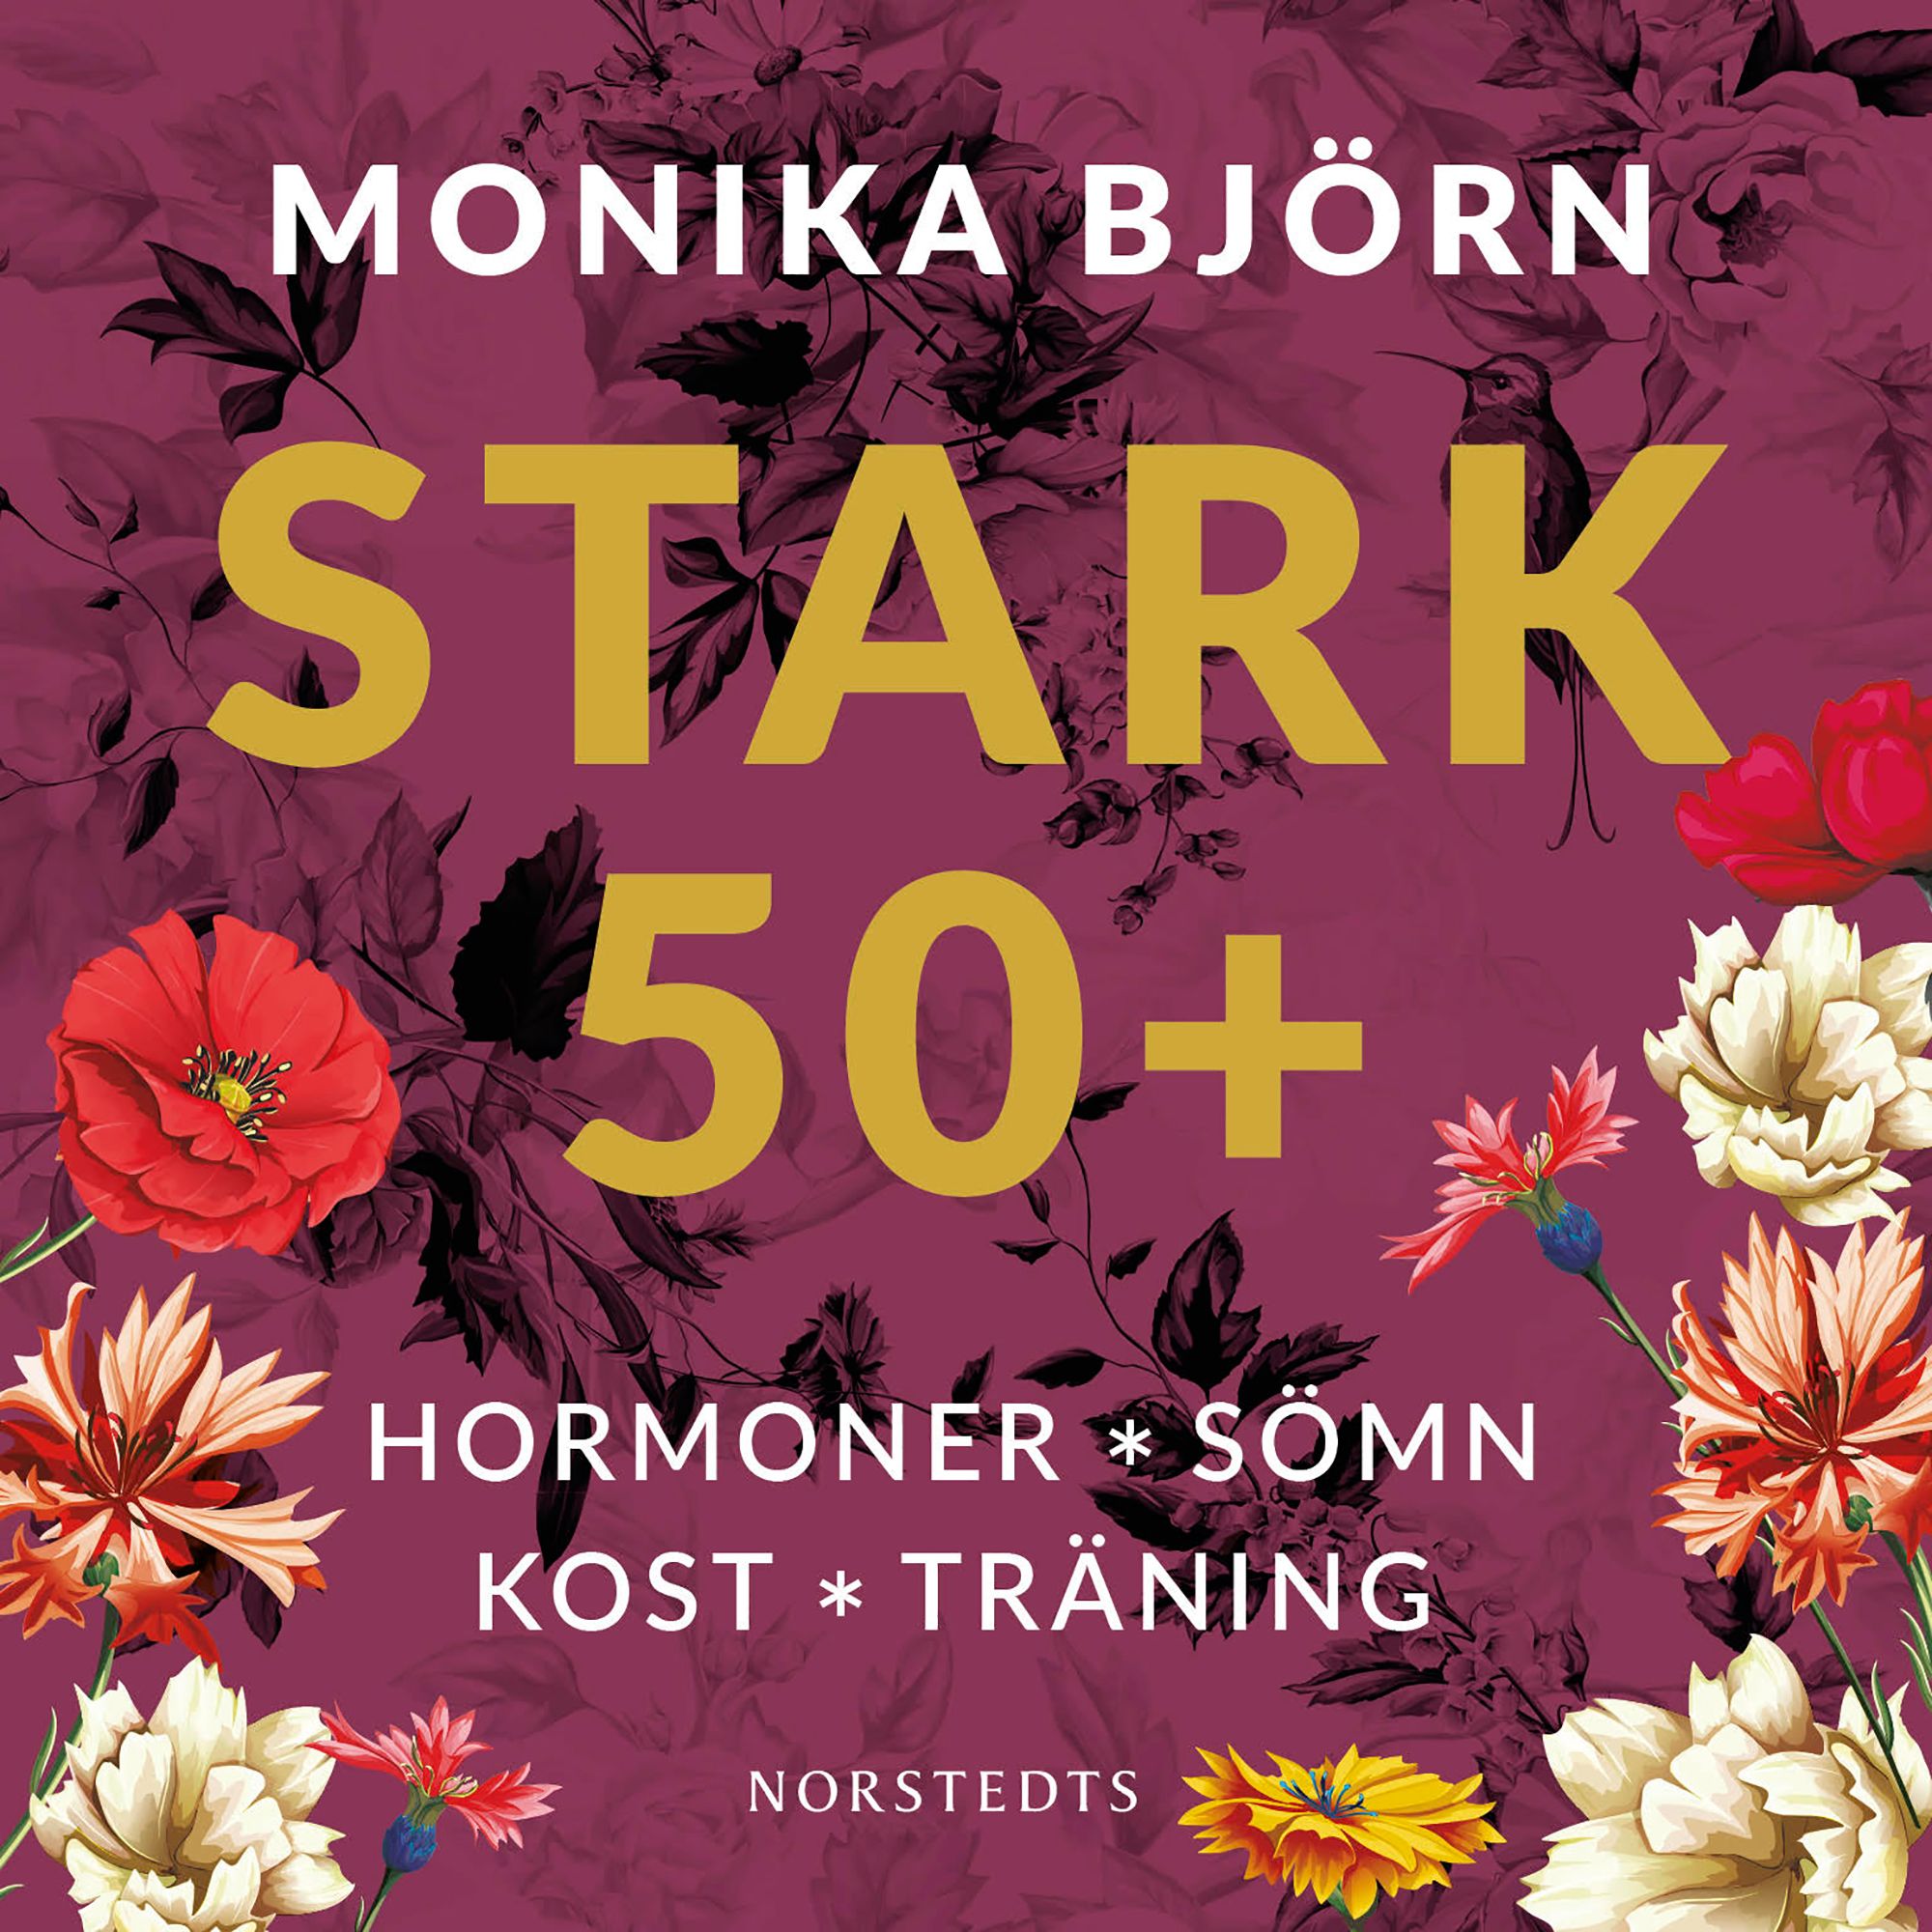 Stark 50+ : Hormoner, sömn, kost, träning, audiobook by Monika Björn